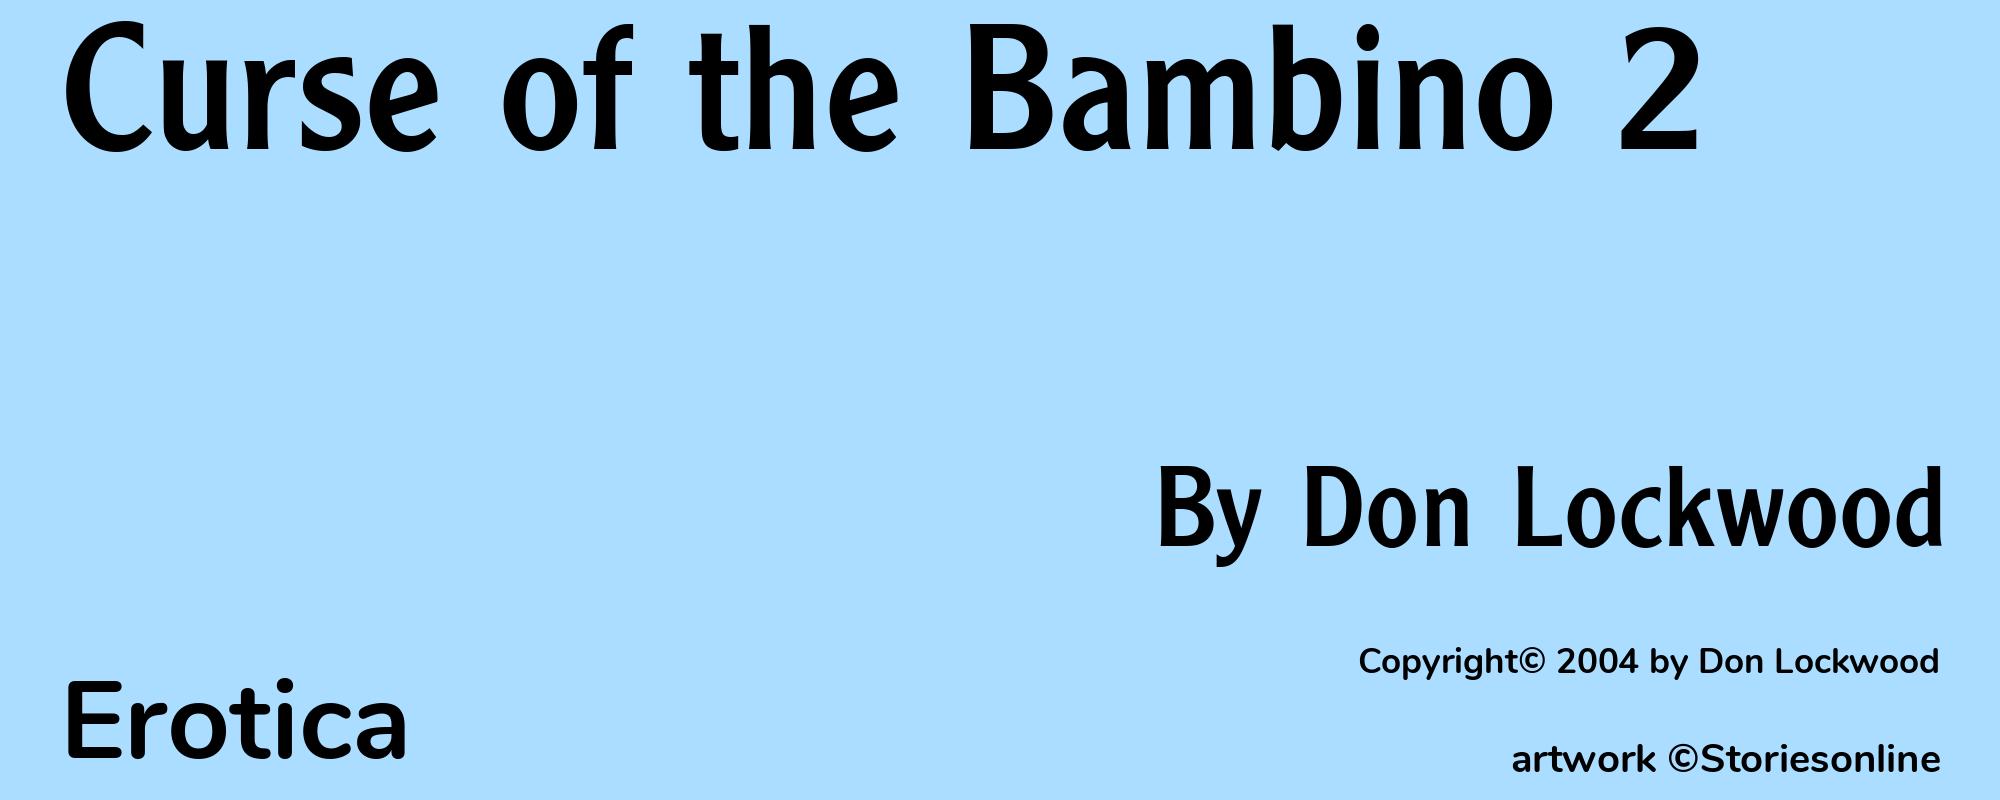 Curse of the Bambino 2 - Cover